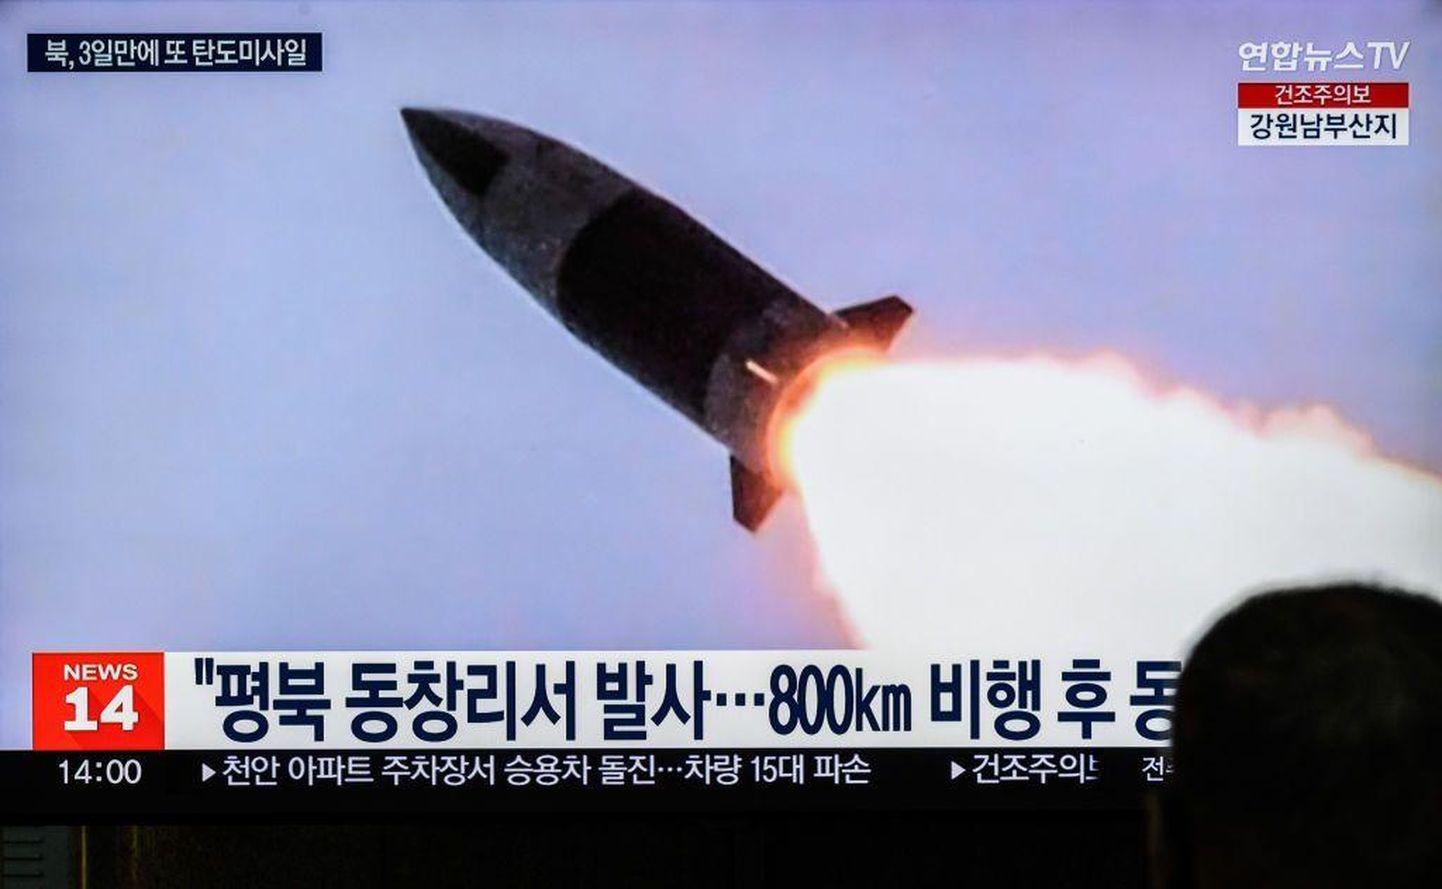 КНДР испытала ракету ближнего радиуса действия в 2023 году. На снимке - кадр из телерепортажа, показанного по южнокорейскому телевидению